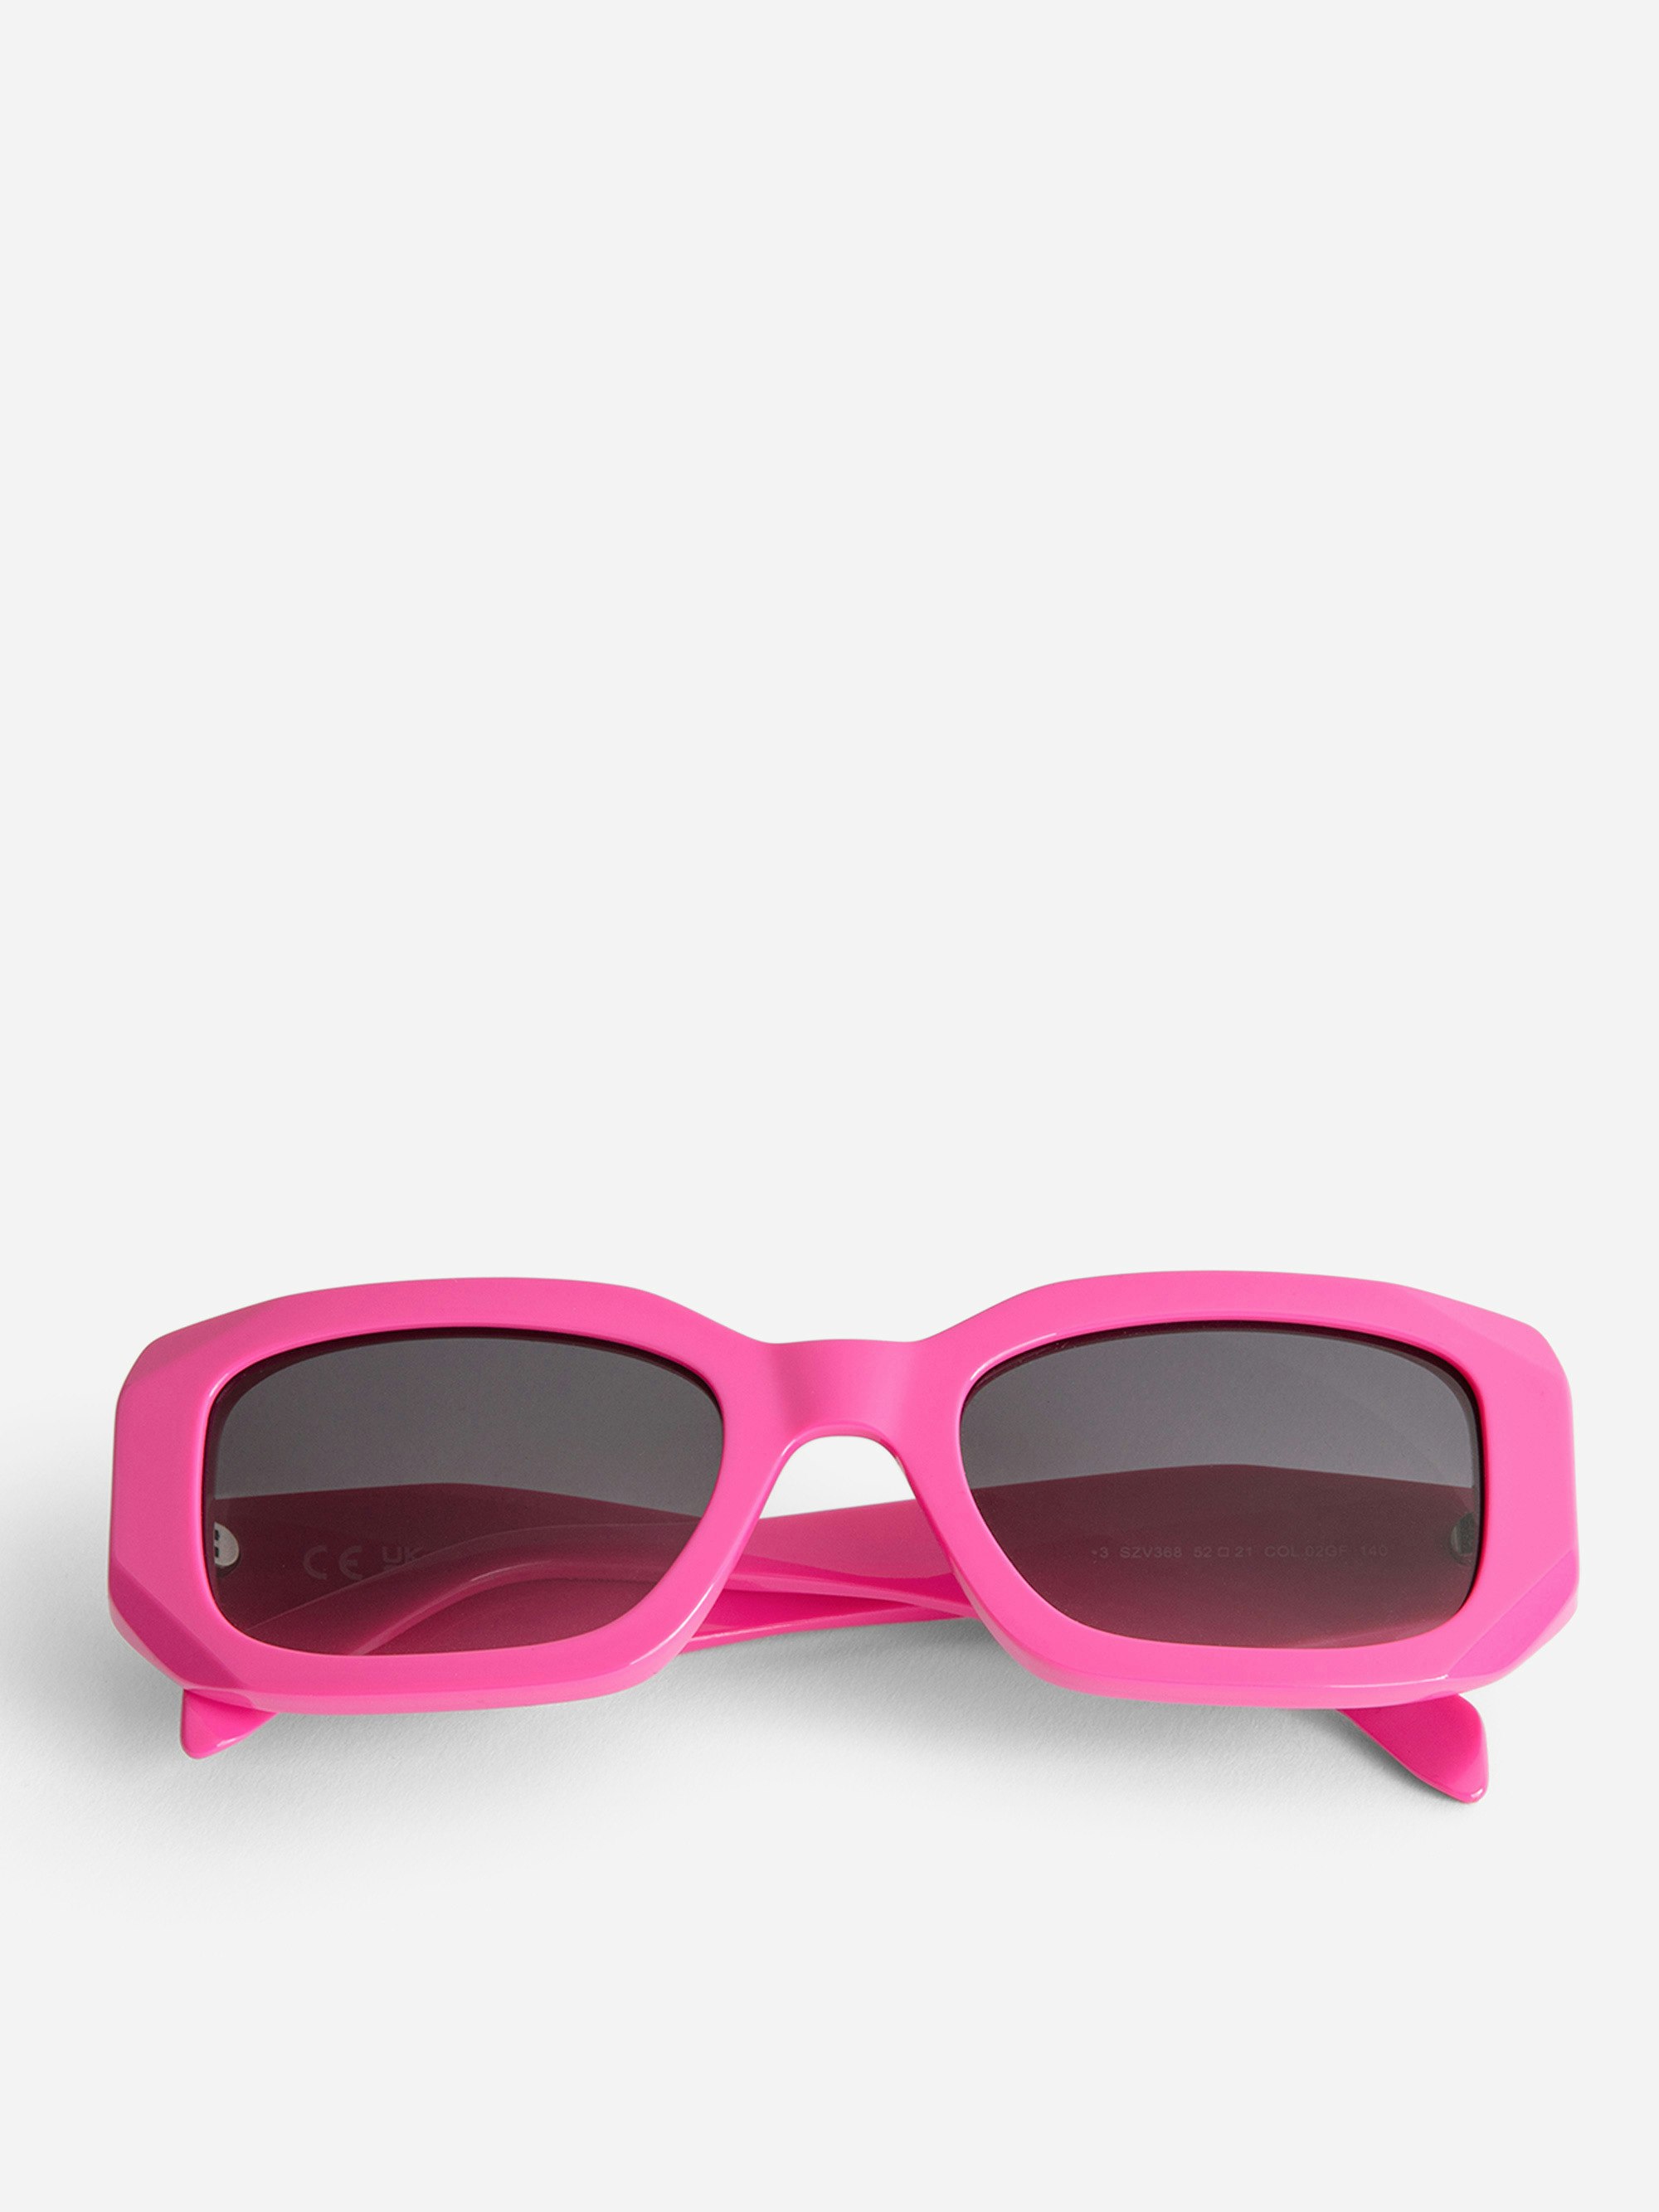 Gafas de sol ZV23H3 - Gafas de sol unisex rectangulares de color rosa con patillas desestructuradas con alas.